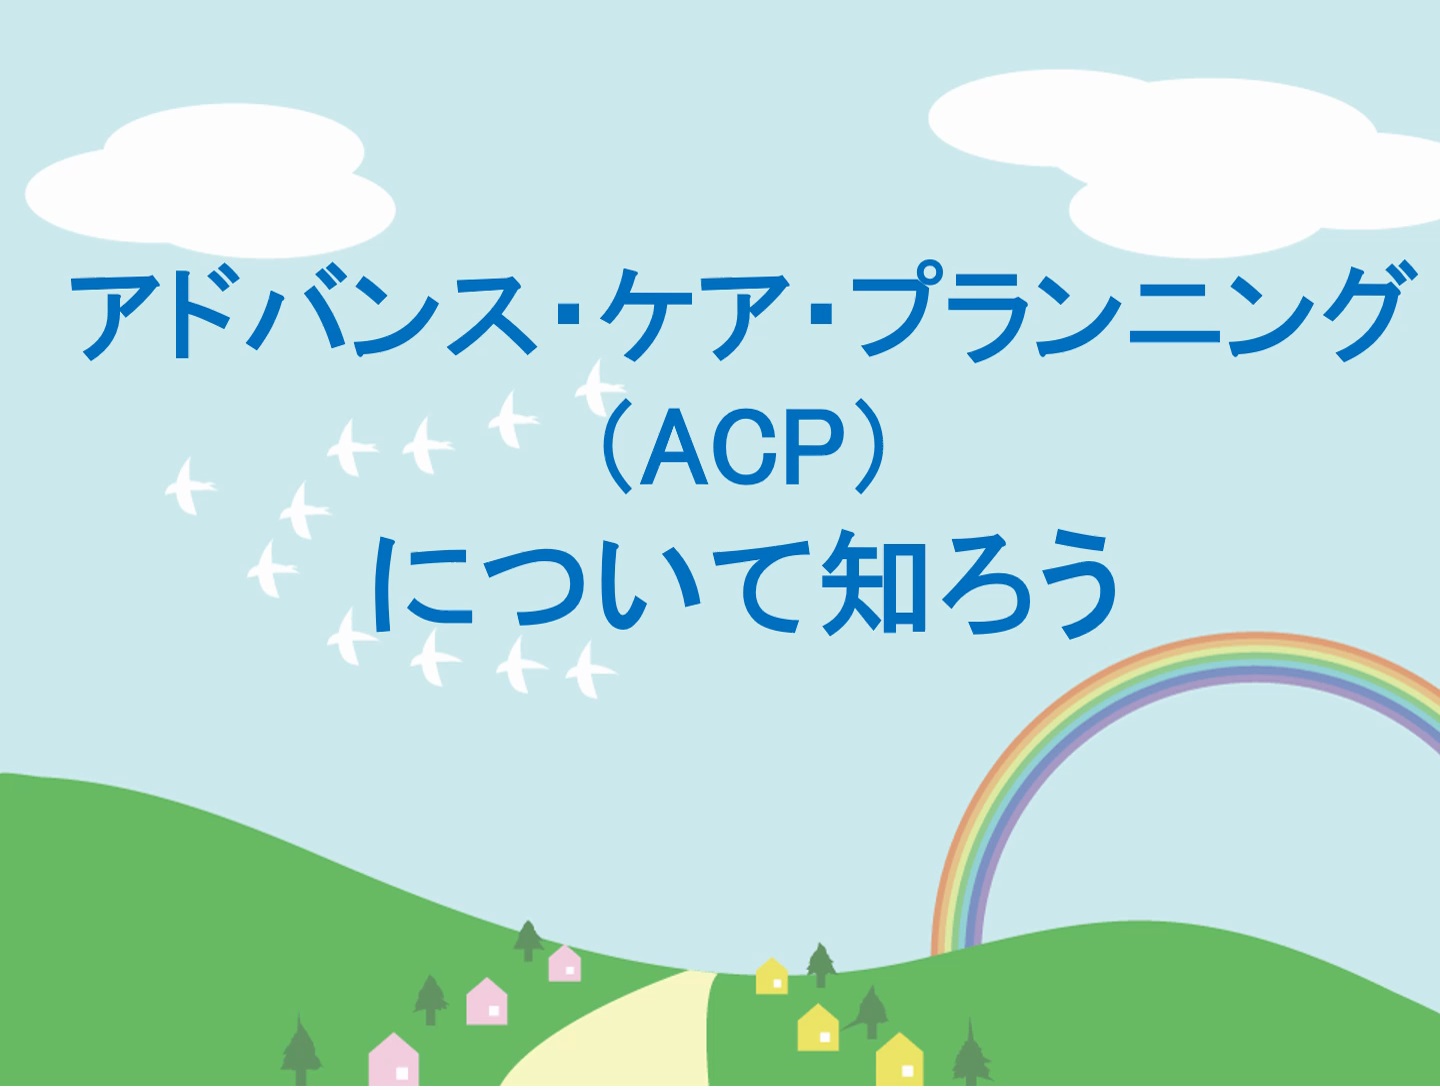 ACPについて